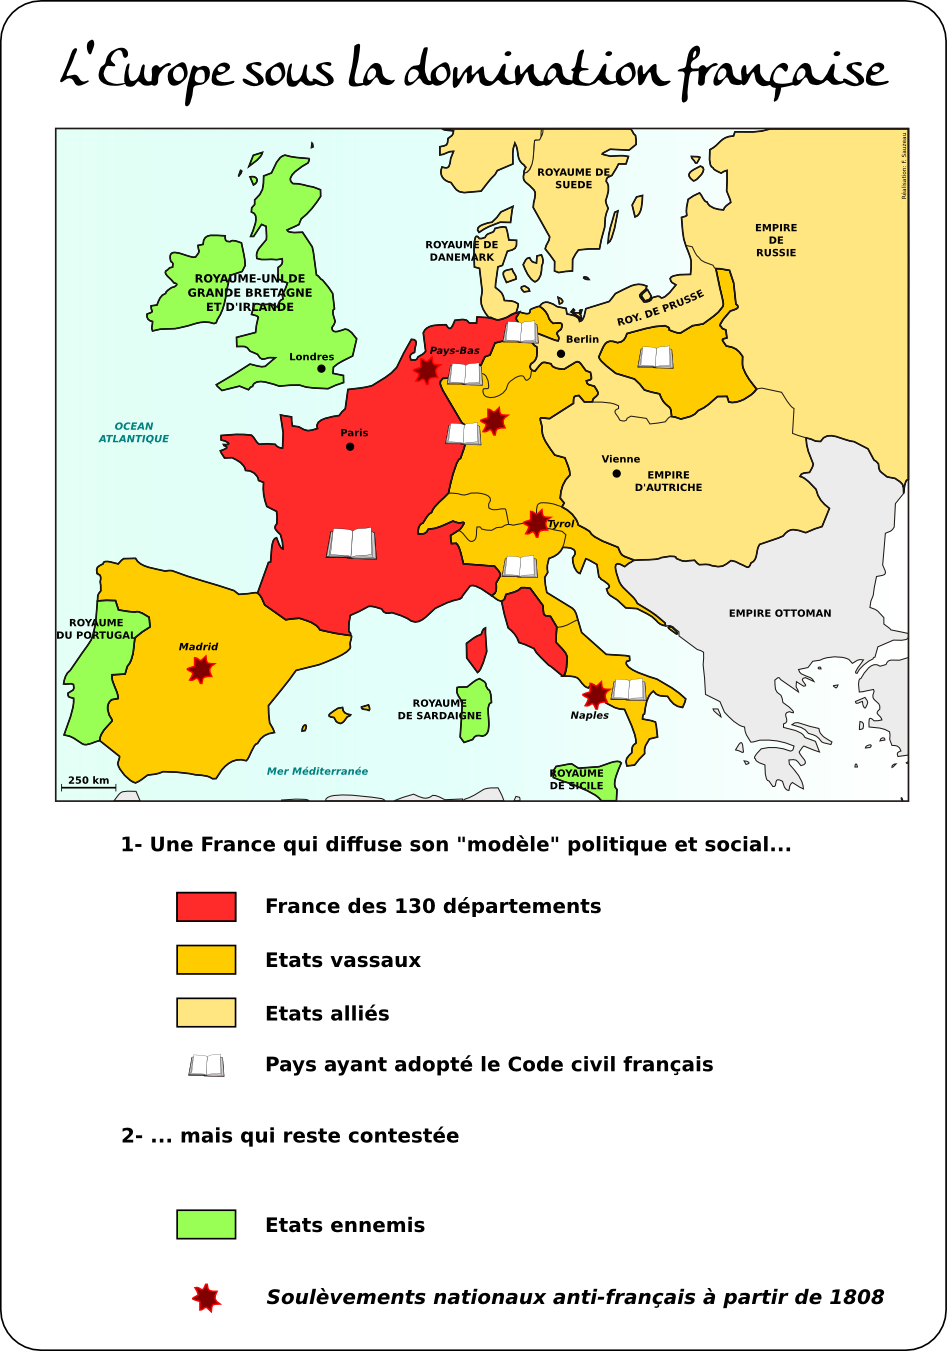 Europe sous domination française